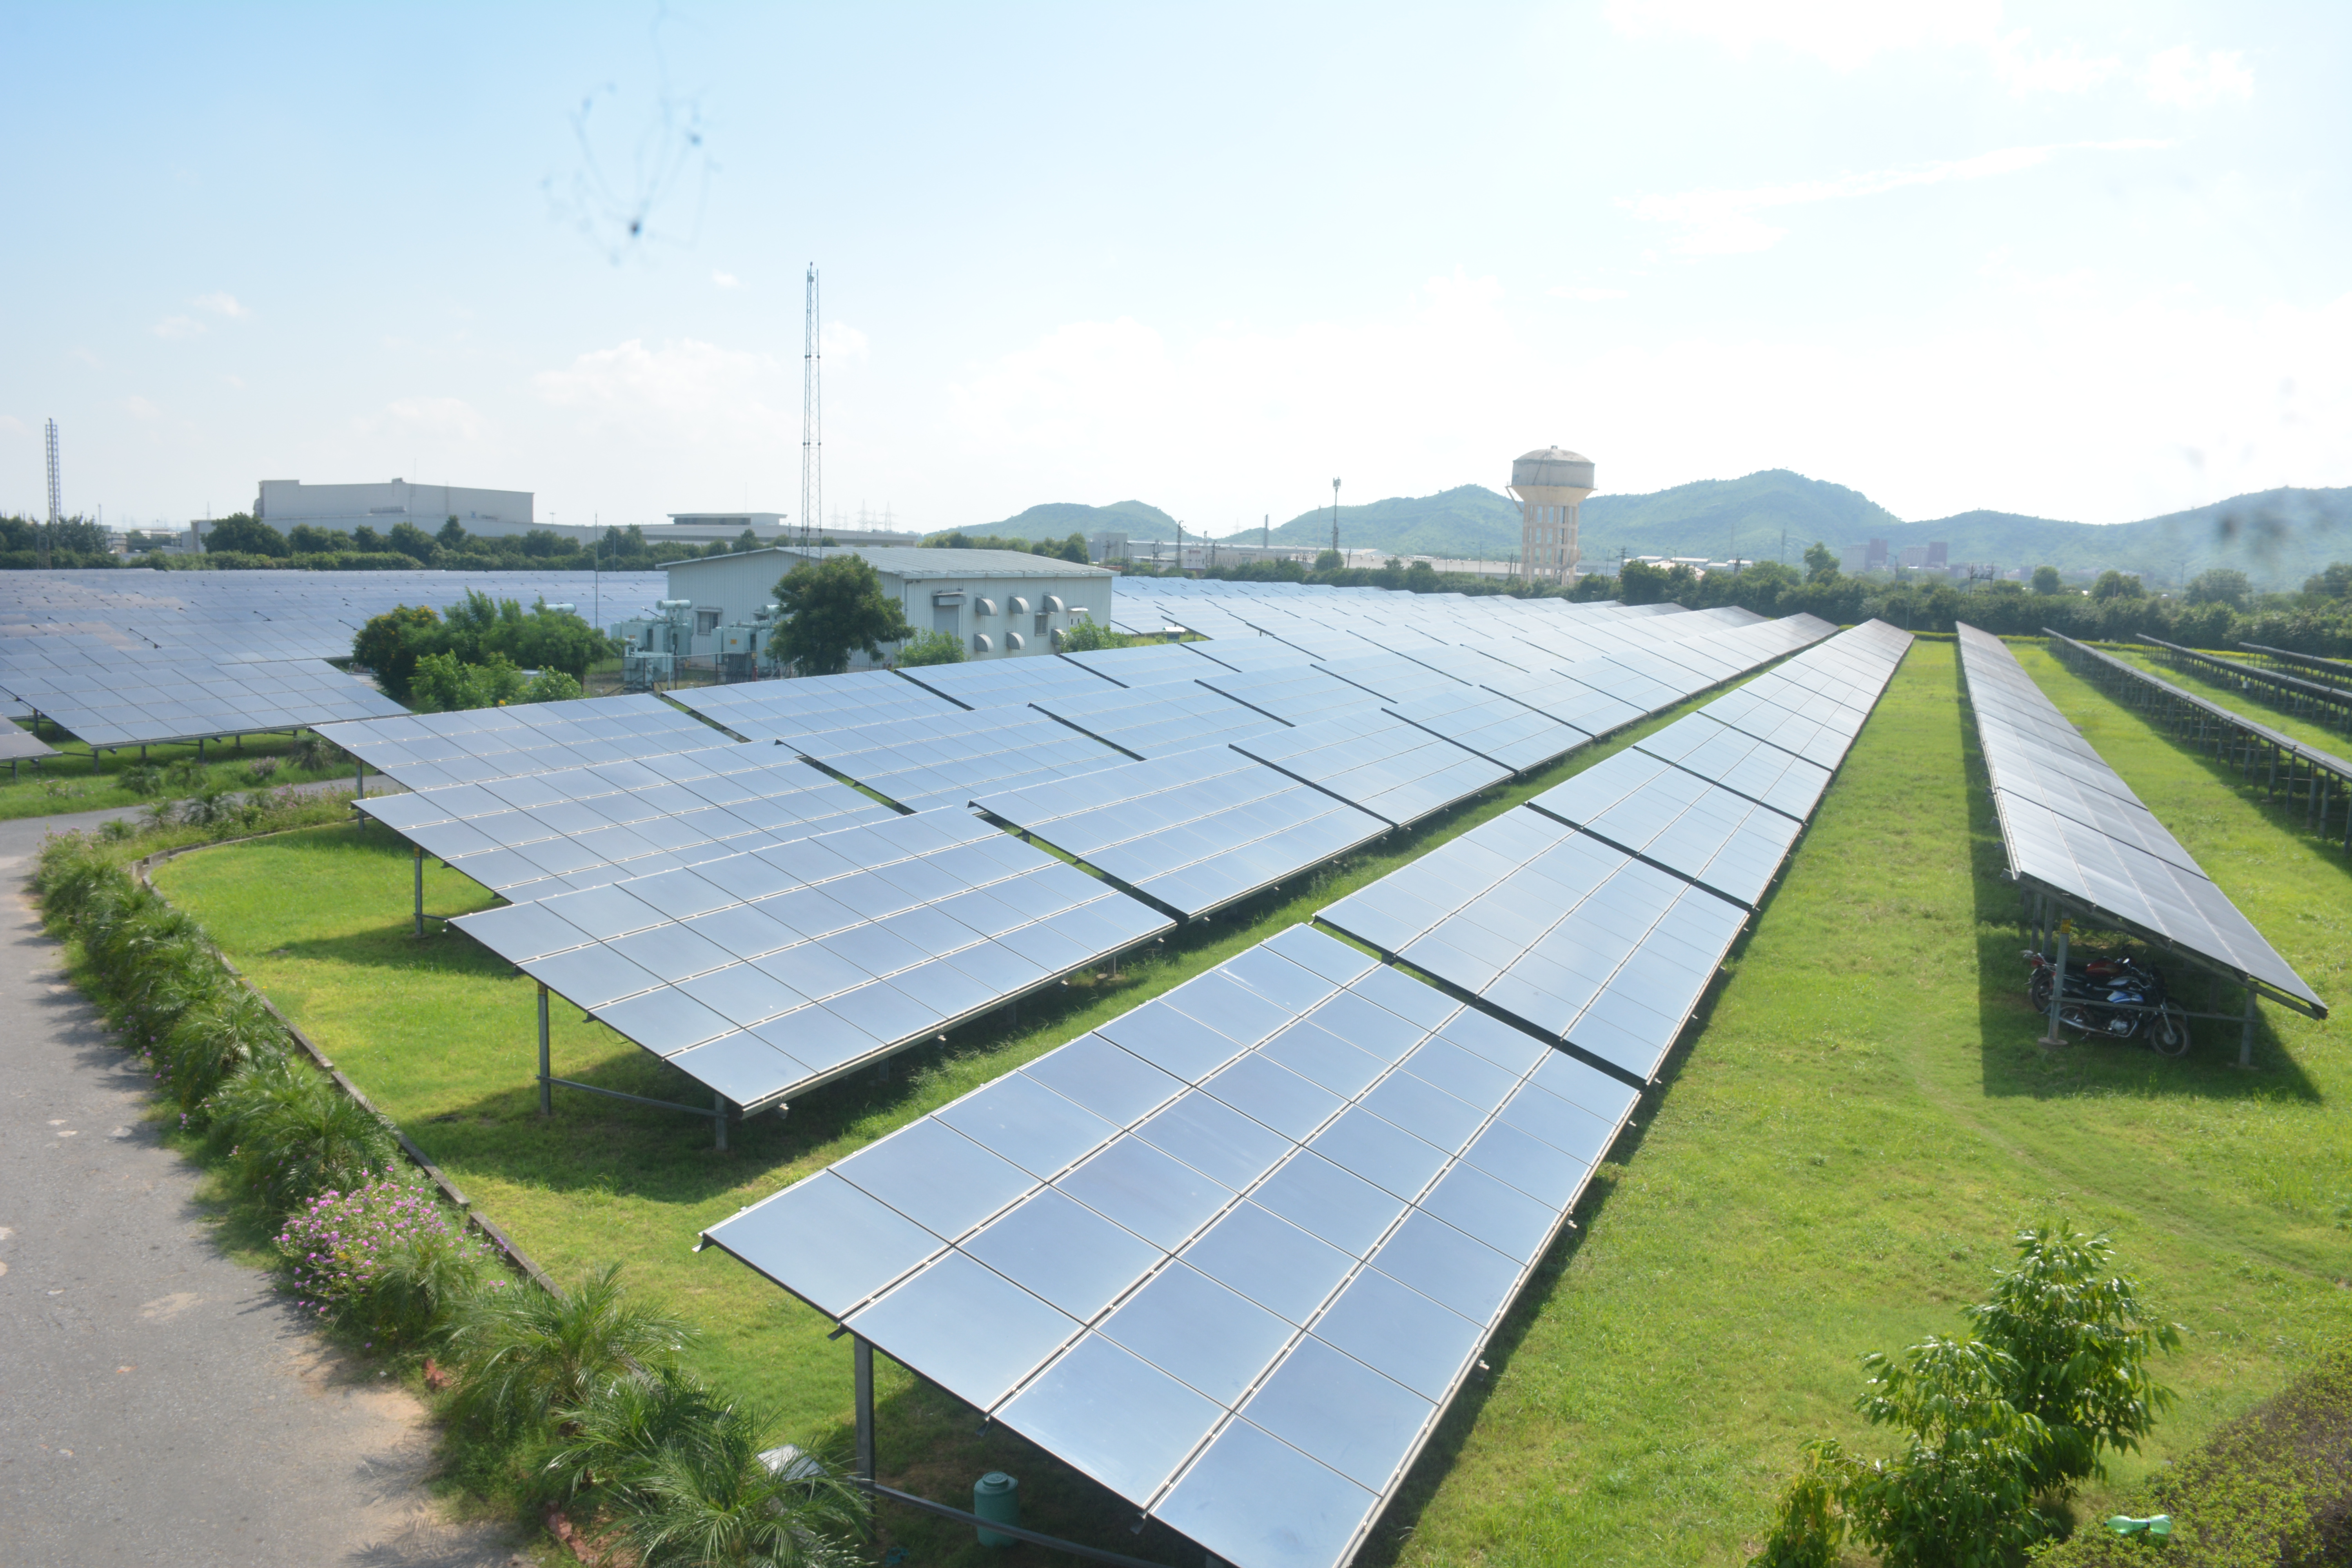 6 MW MODEL SOLAR PROJECT IN NEEMRANA, RAJASTHAN 2